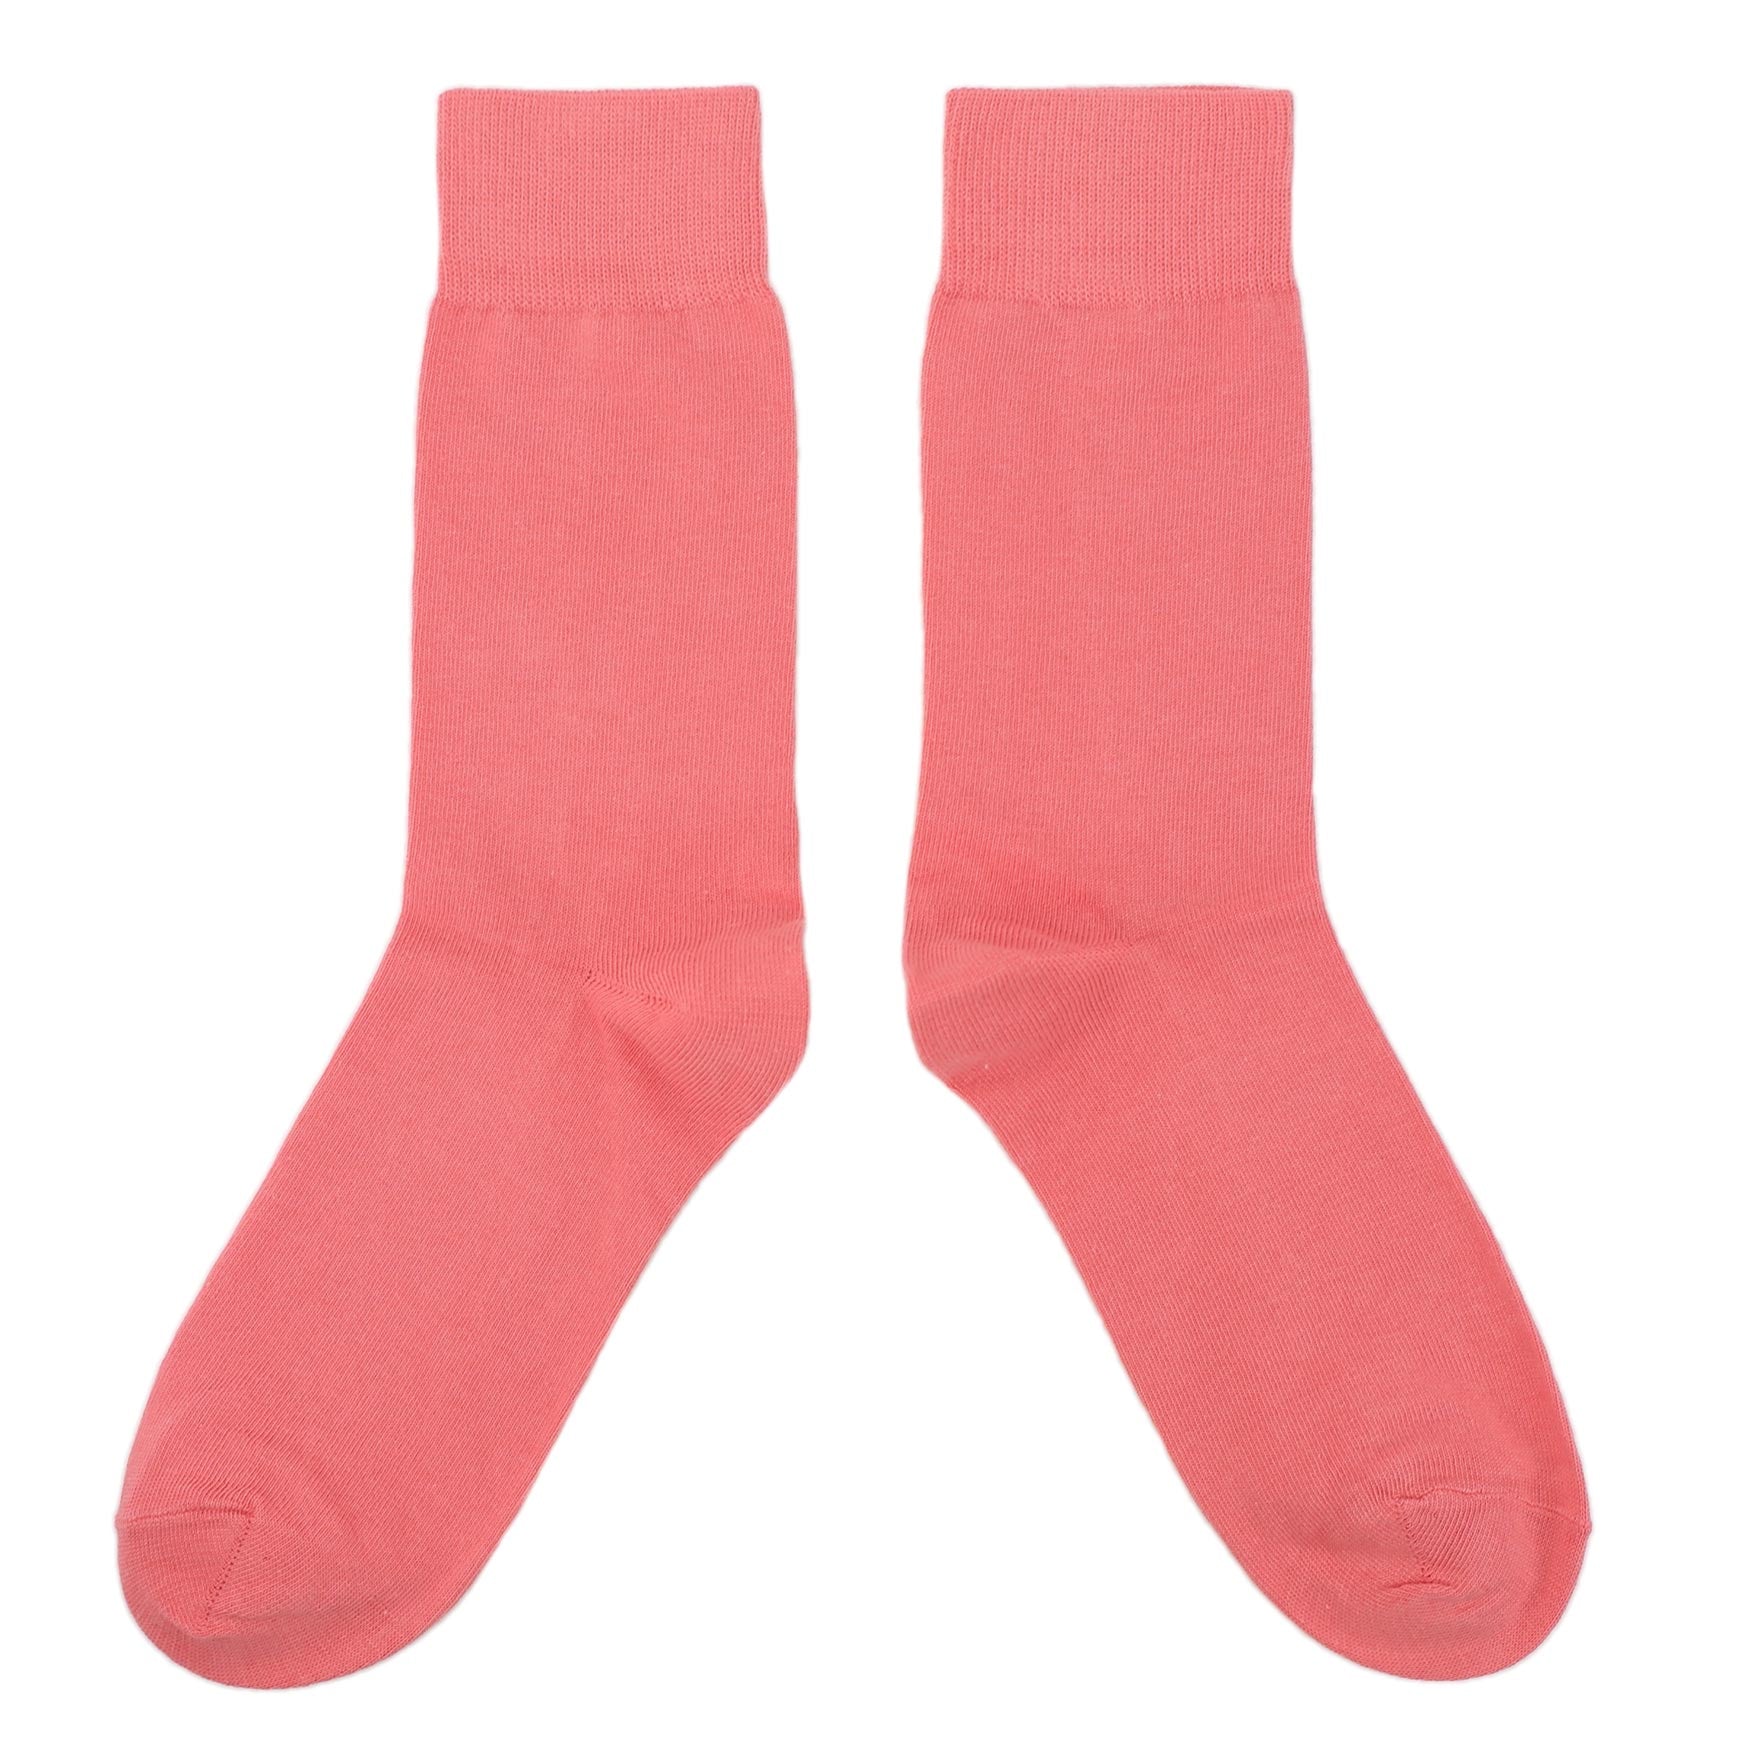 coral-solid-color-mens-dress-socks-boldsocks-overhead